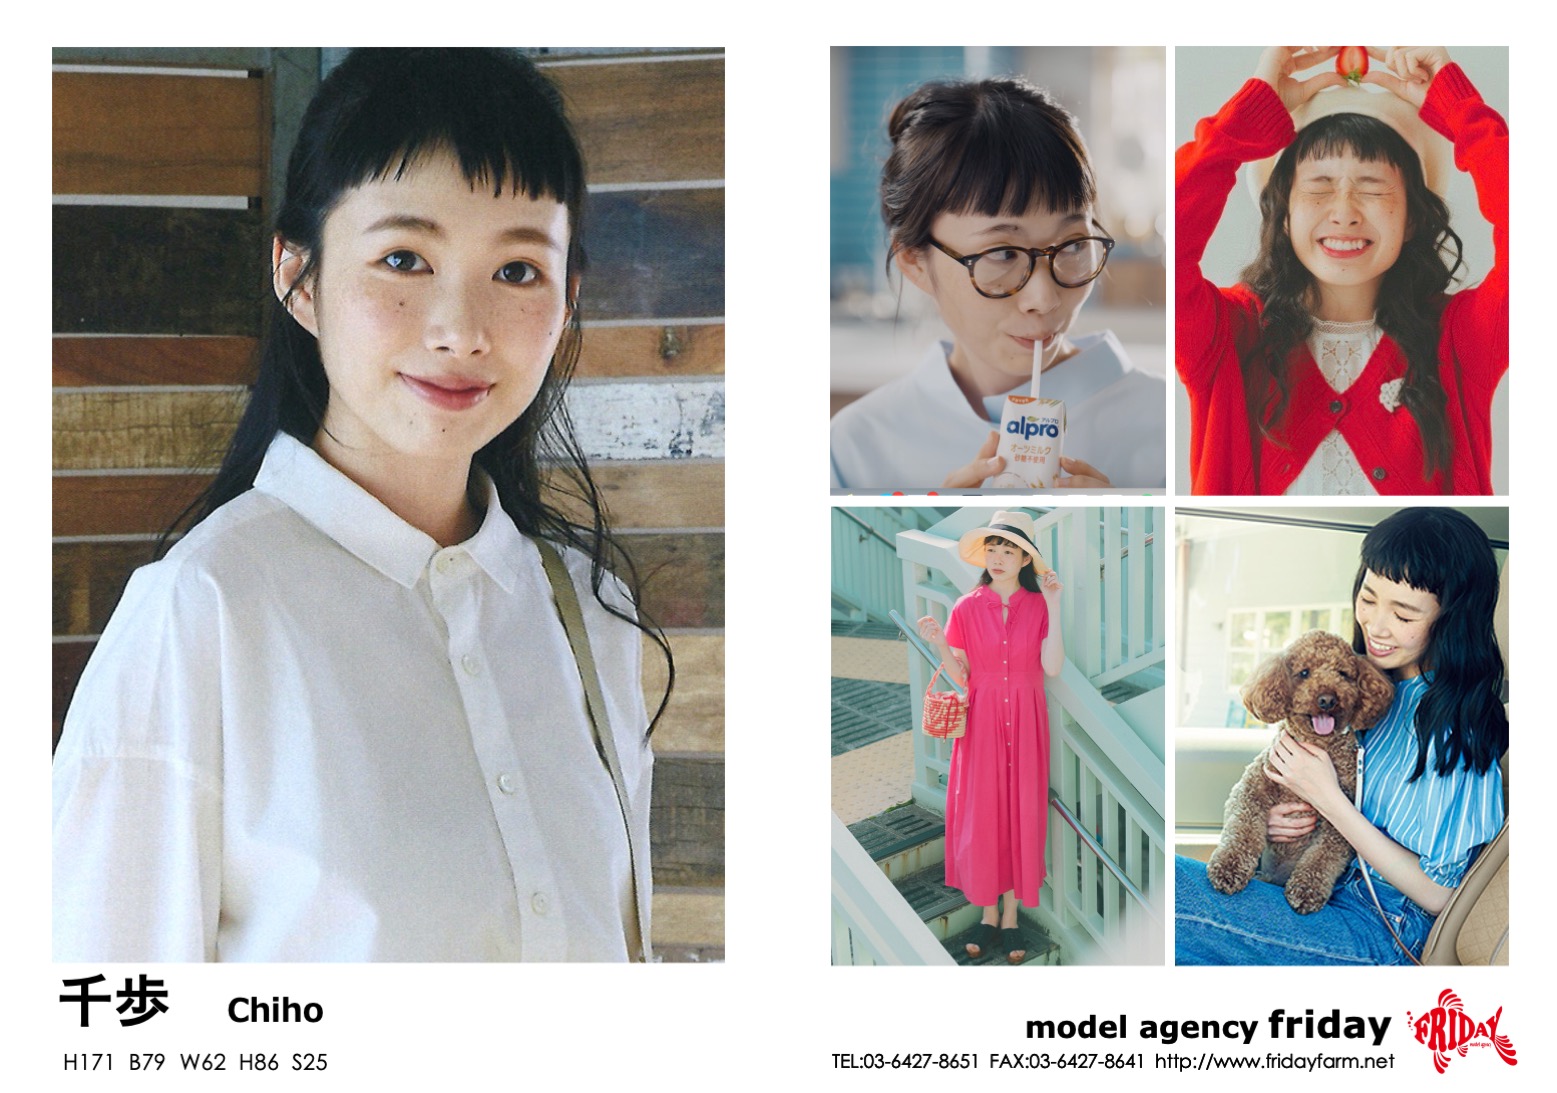 千歩 - Chiho | model agency friday